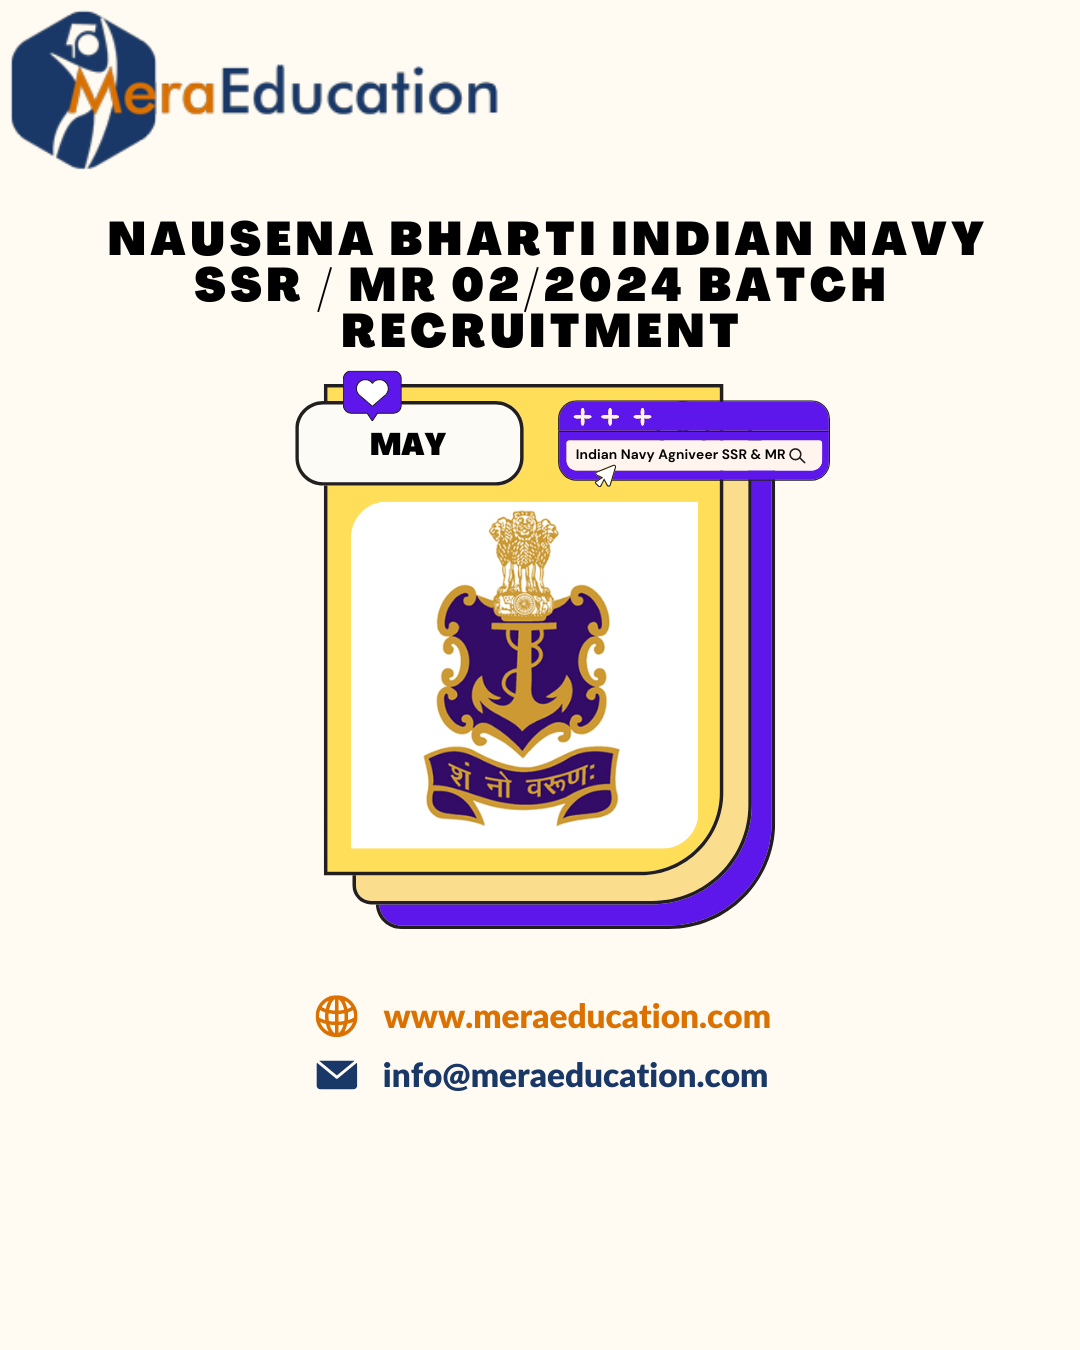 MeraEducation Indian Navy SSR MR 2024